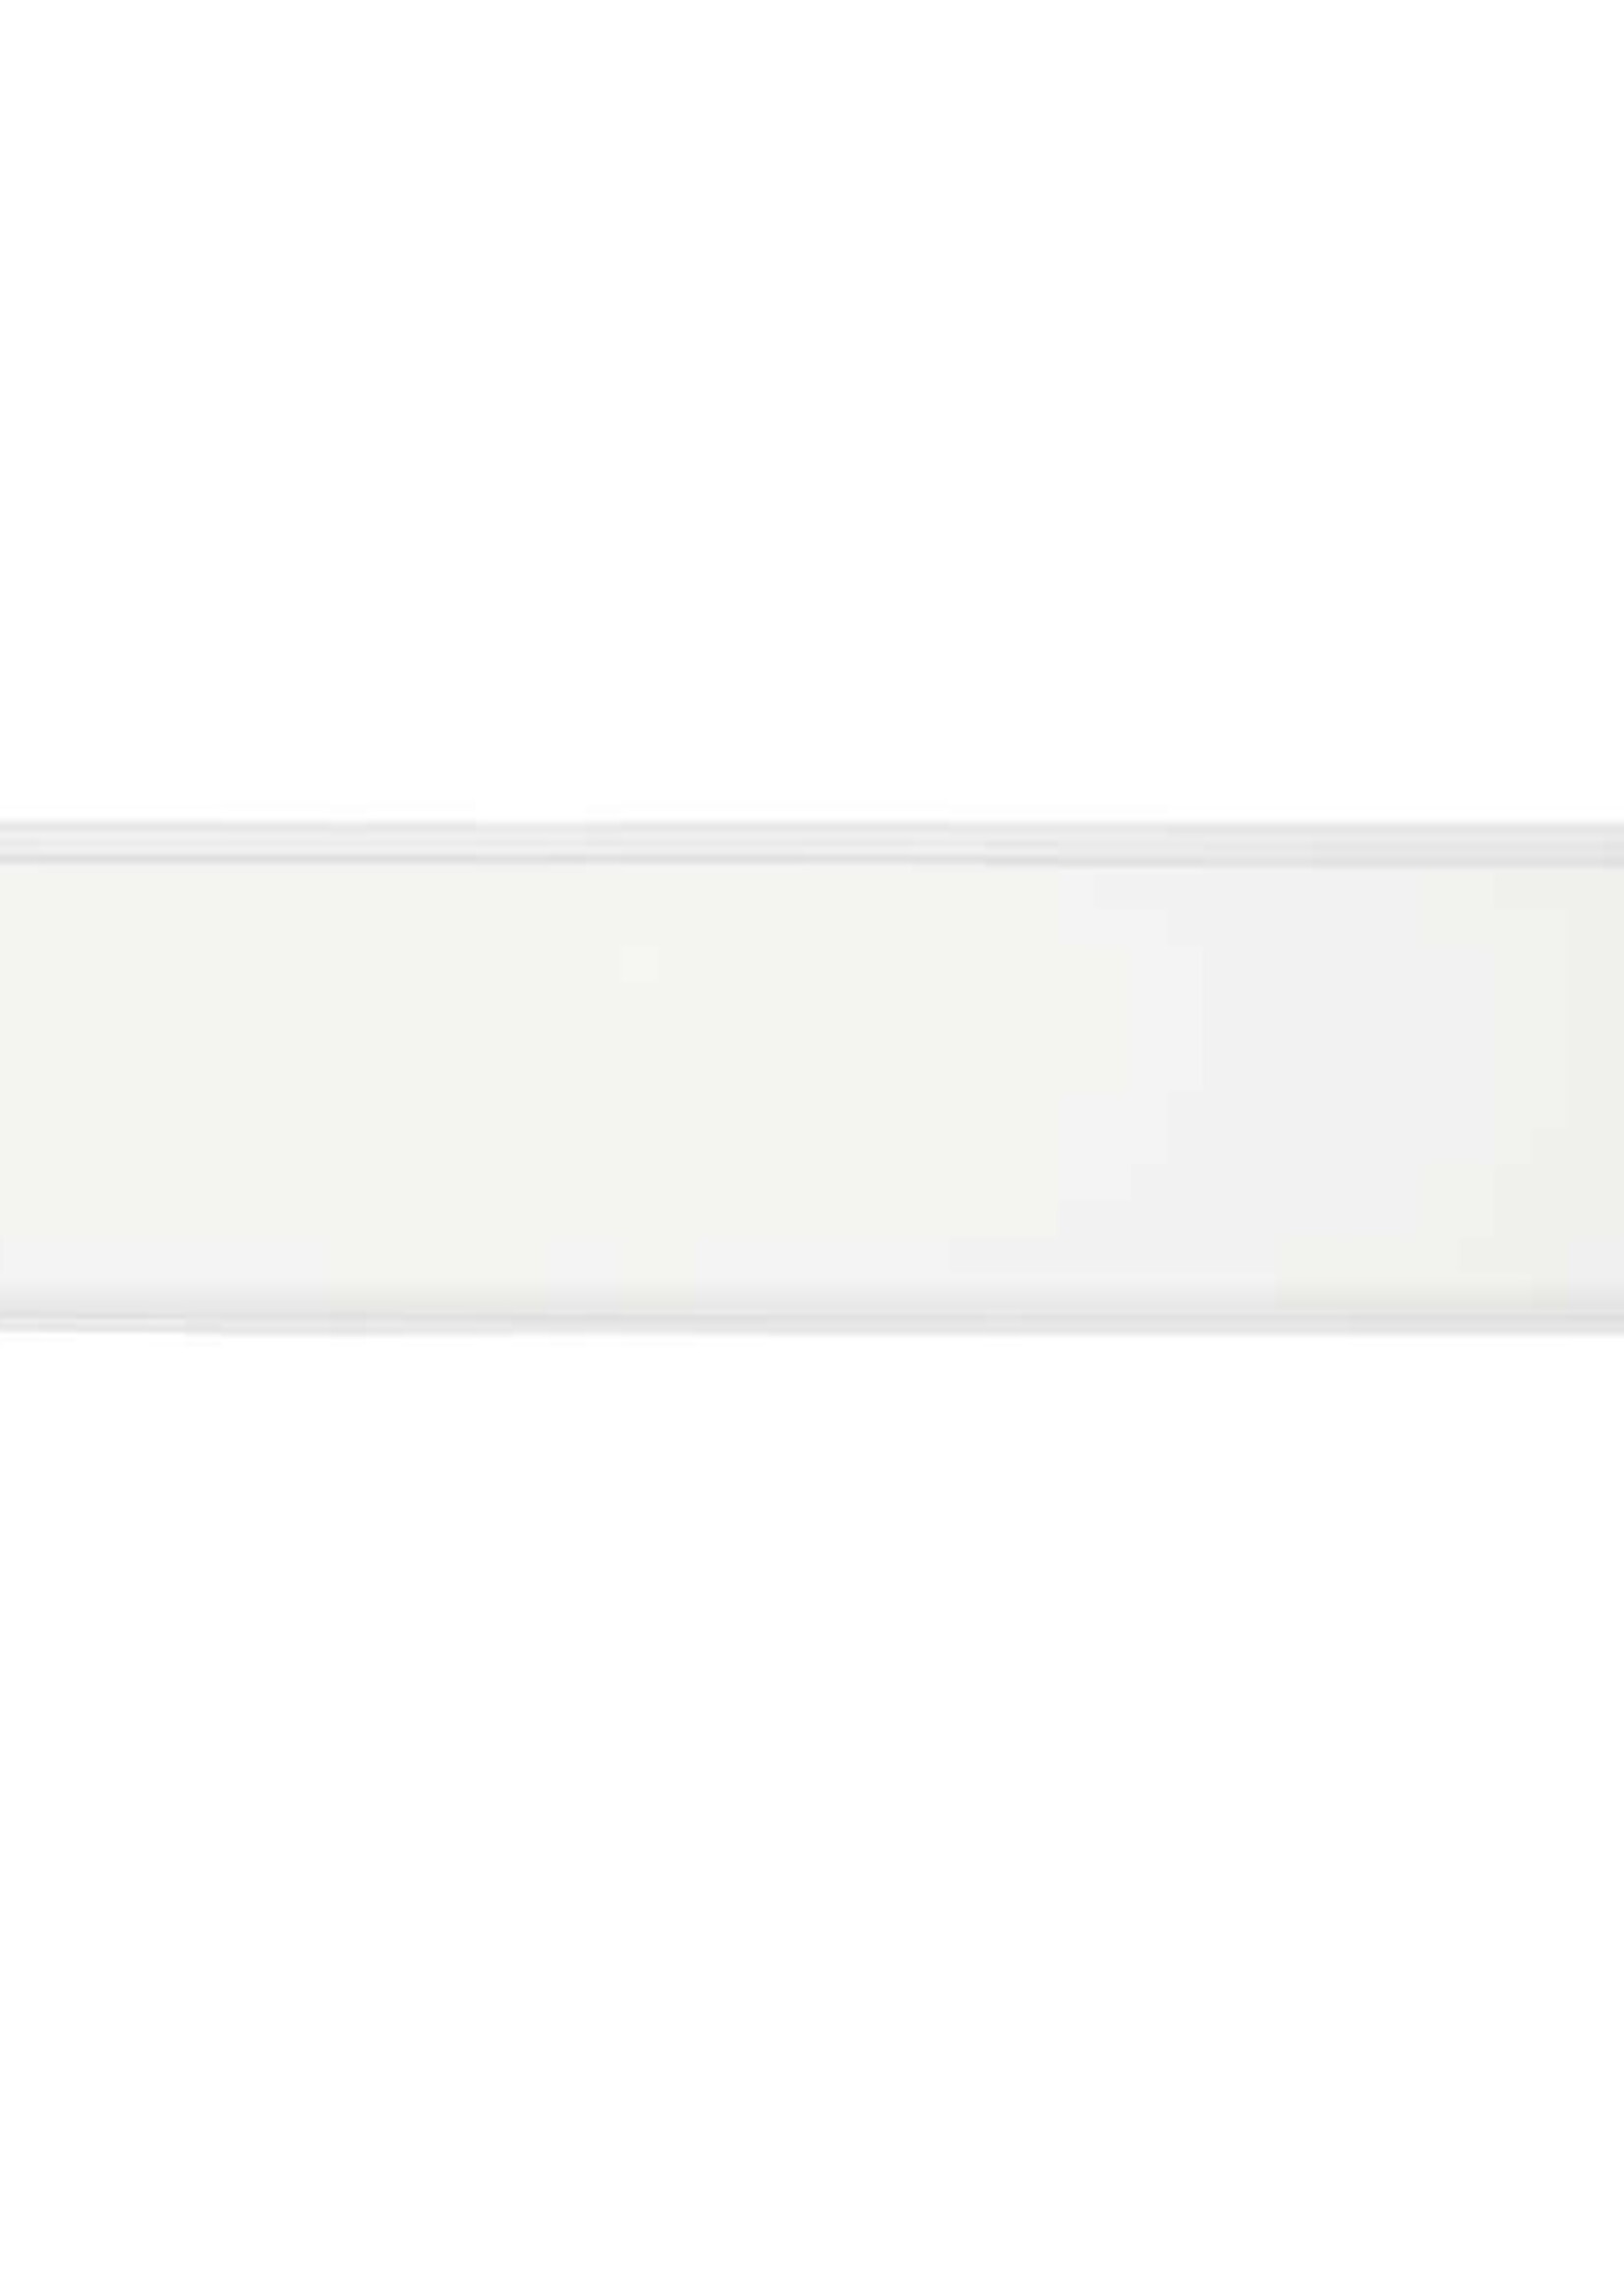 LEDWINKEL-Online WiFi LED Panel 60x120cm RGB+CCT 40W Edge-lit